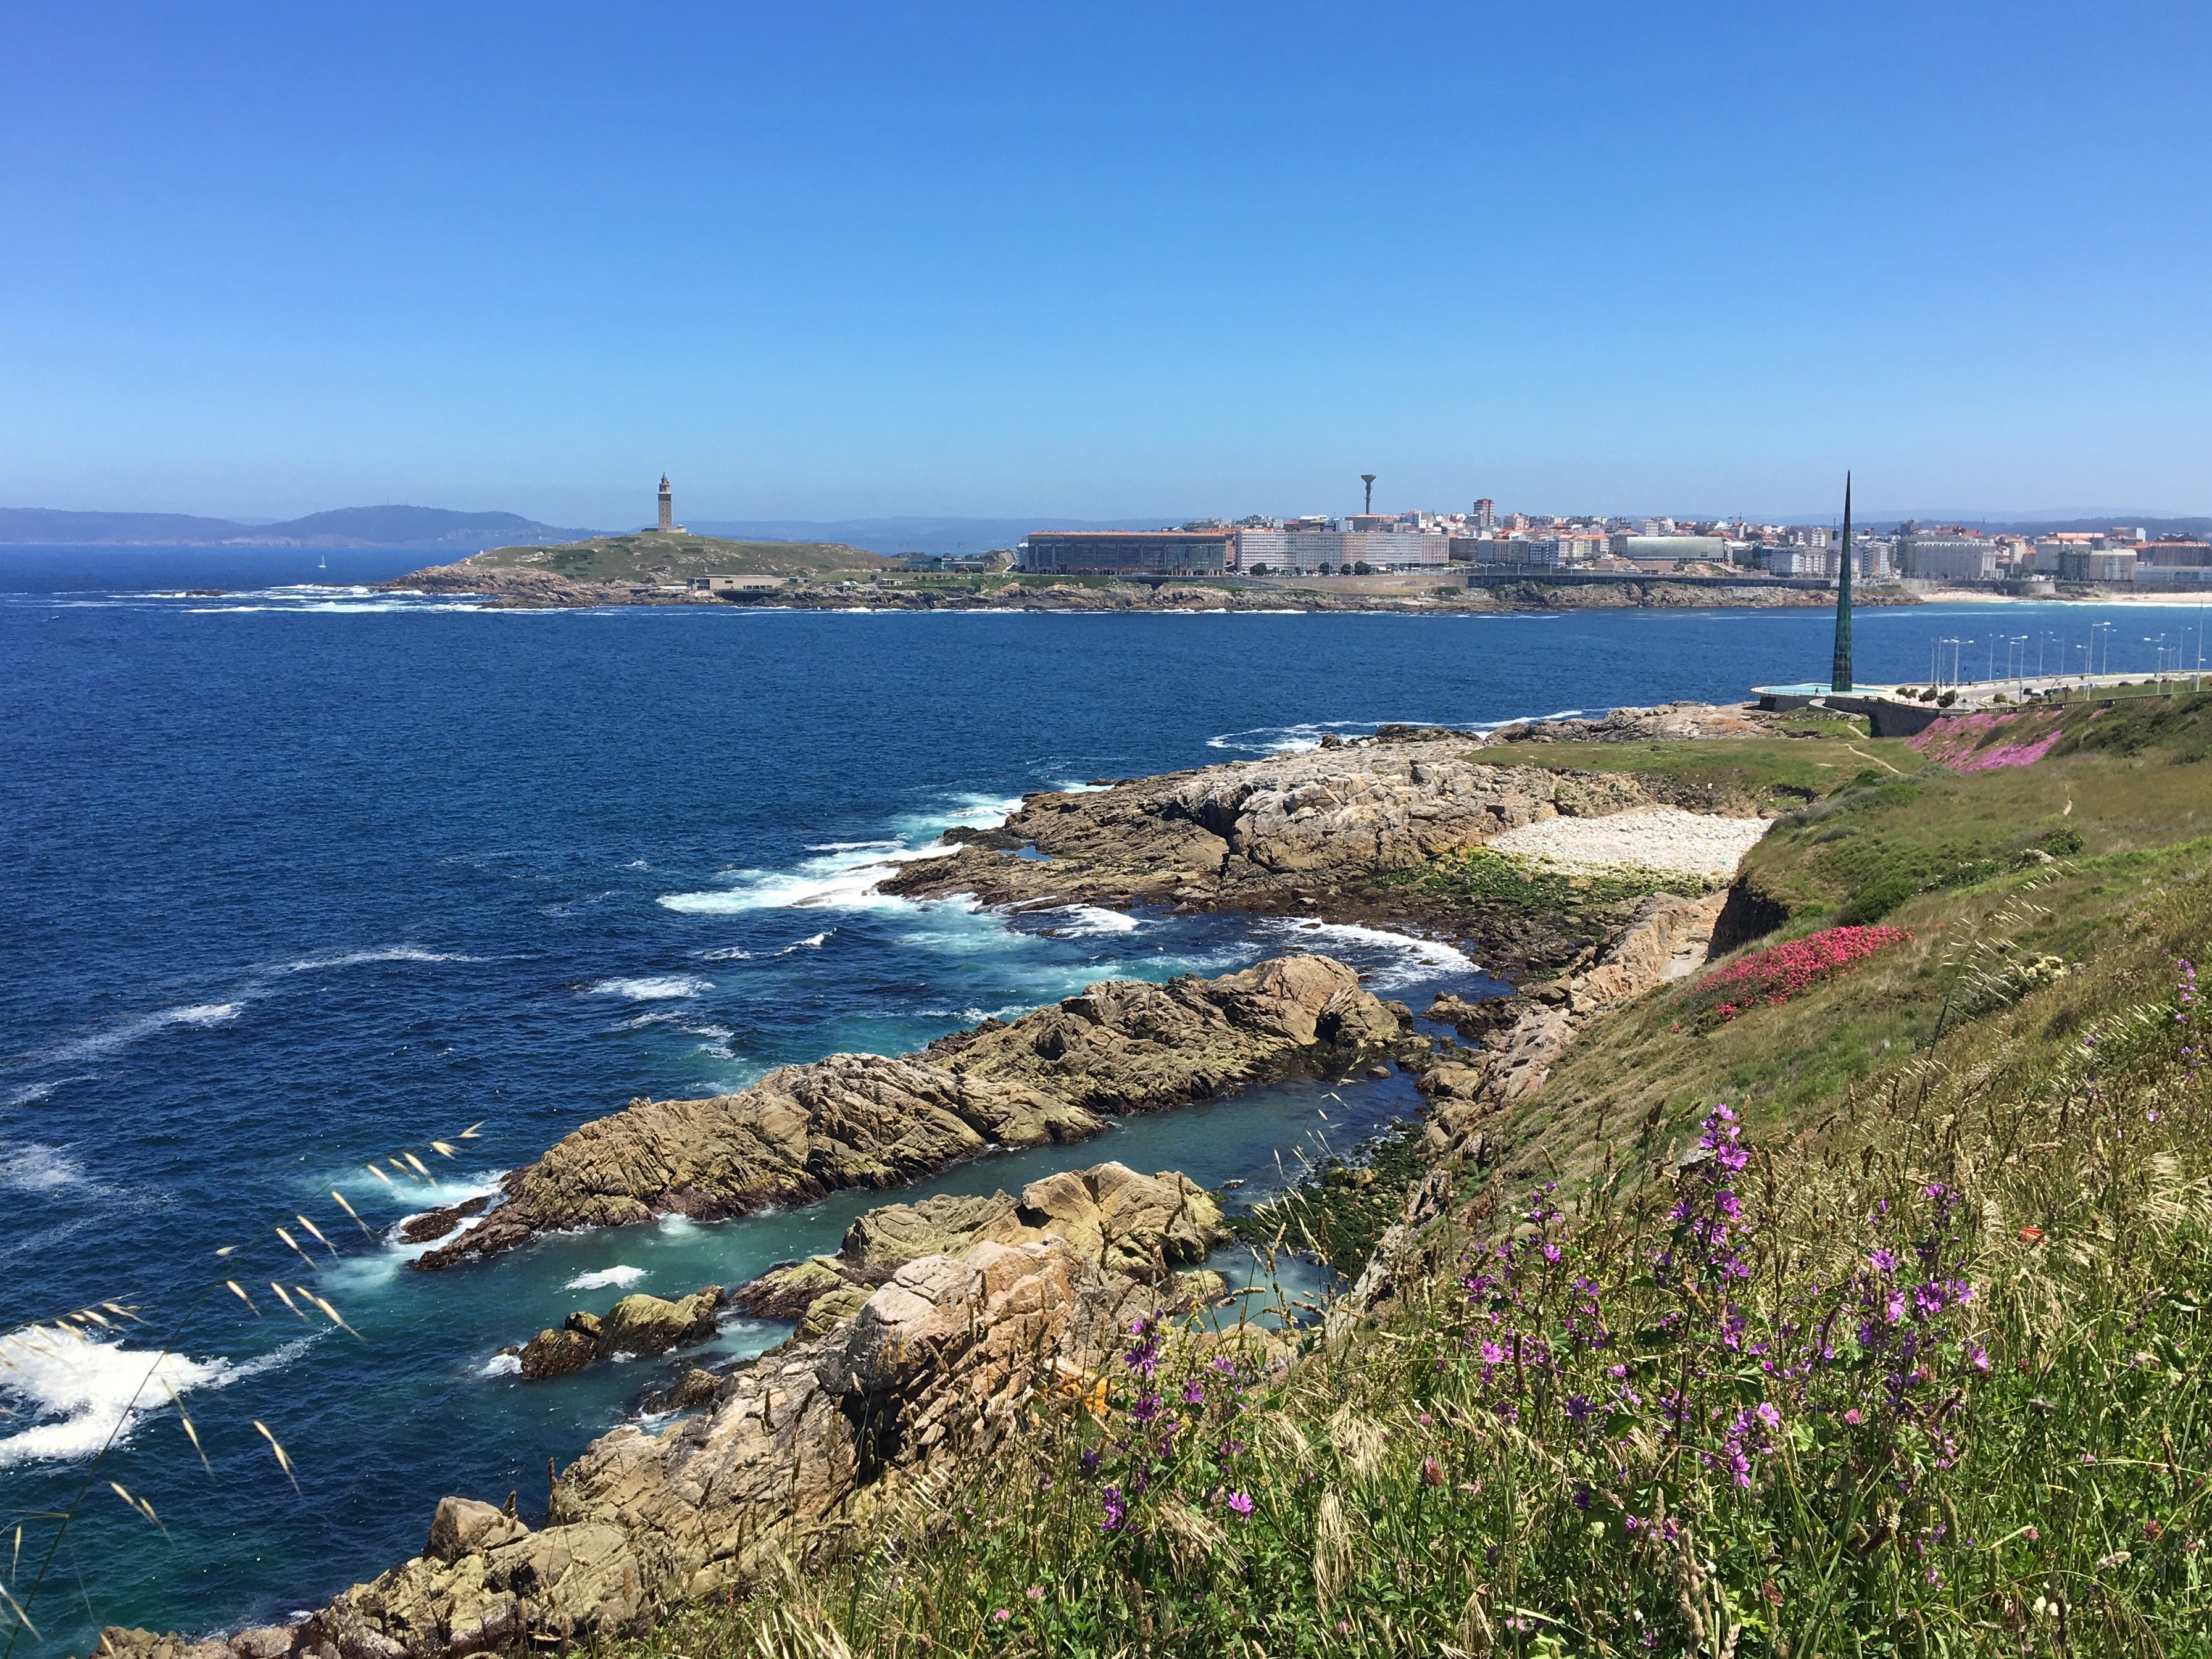 Gorgeous views of La Coruña, Spain!